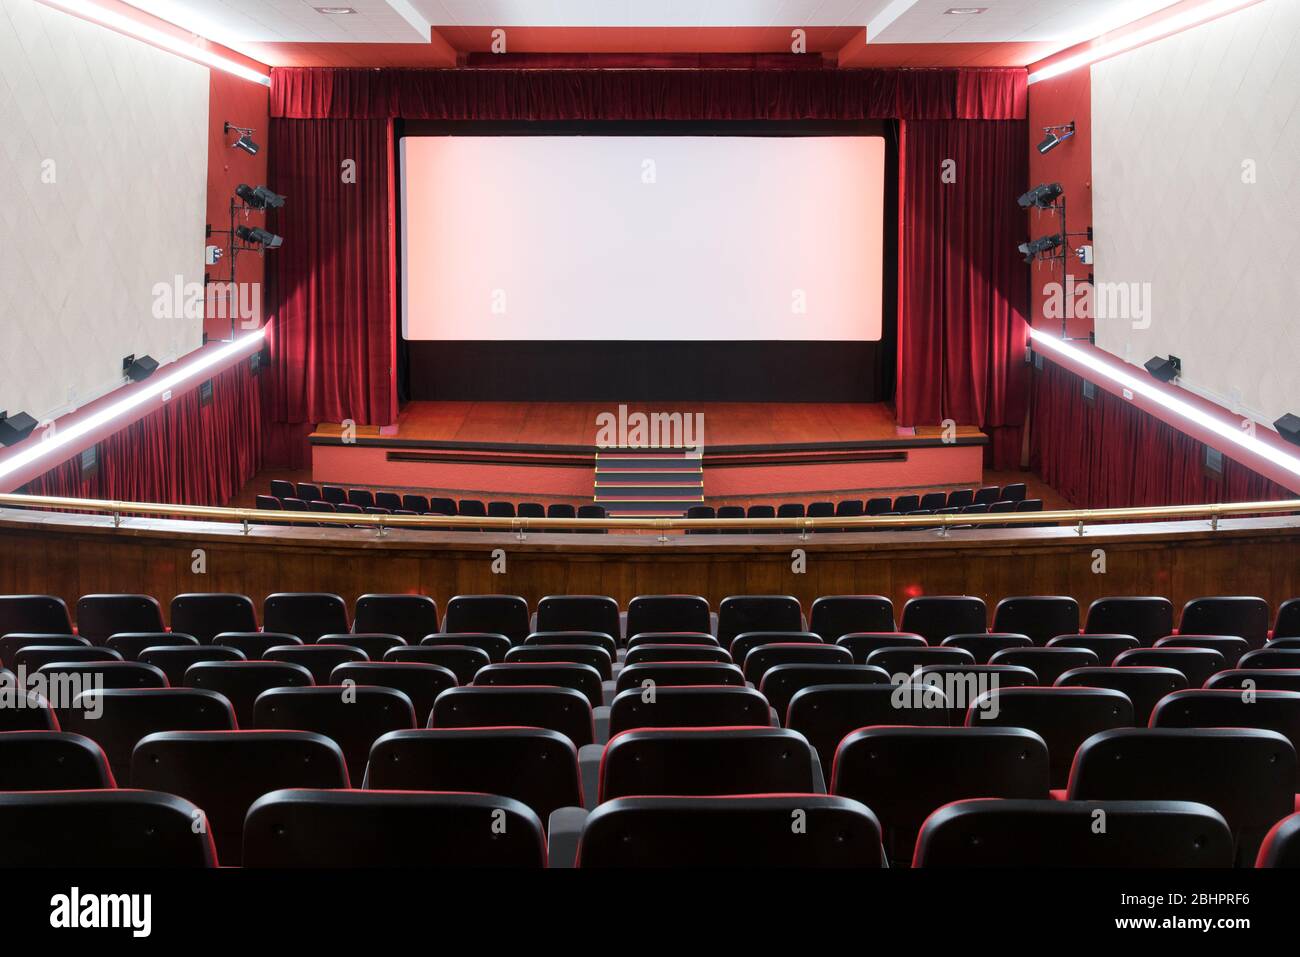 Im Inneren des Kinos mit freien Sitzen und den roten Vorhängen offen gezogen, um eine leere Bühne von hinten gesehen offenbaren Stockfoto